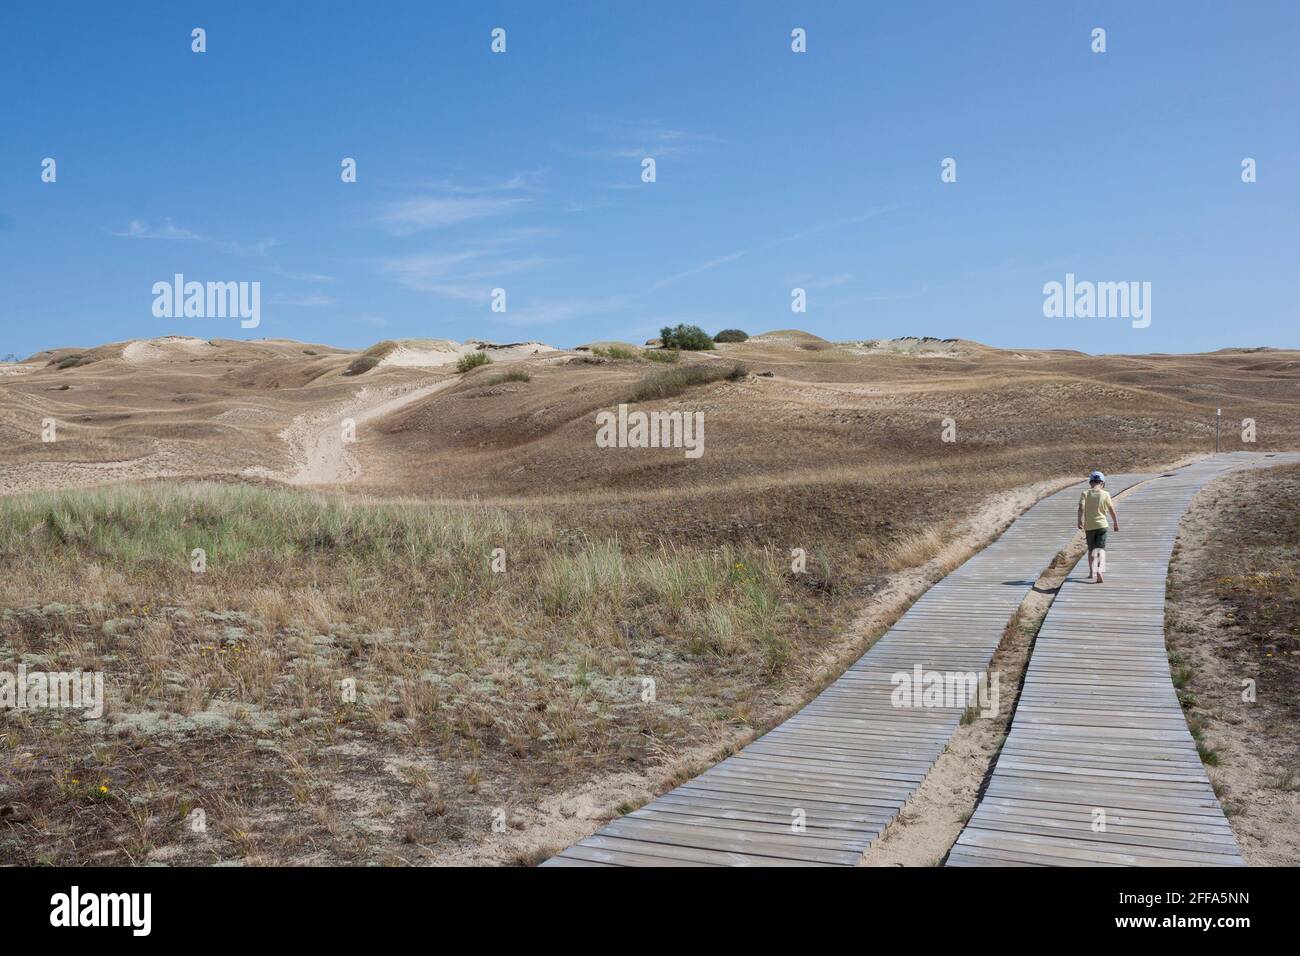 Una sola figura está yendo lejos en el fondo de las dunas de arena. Paisaje con colinas de arena y un camino de madera estirado en la distancia Foto de stock